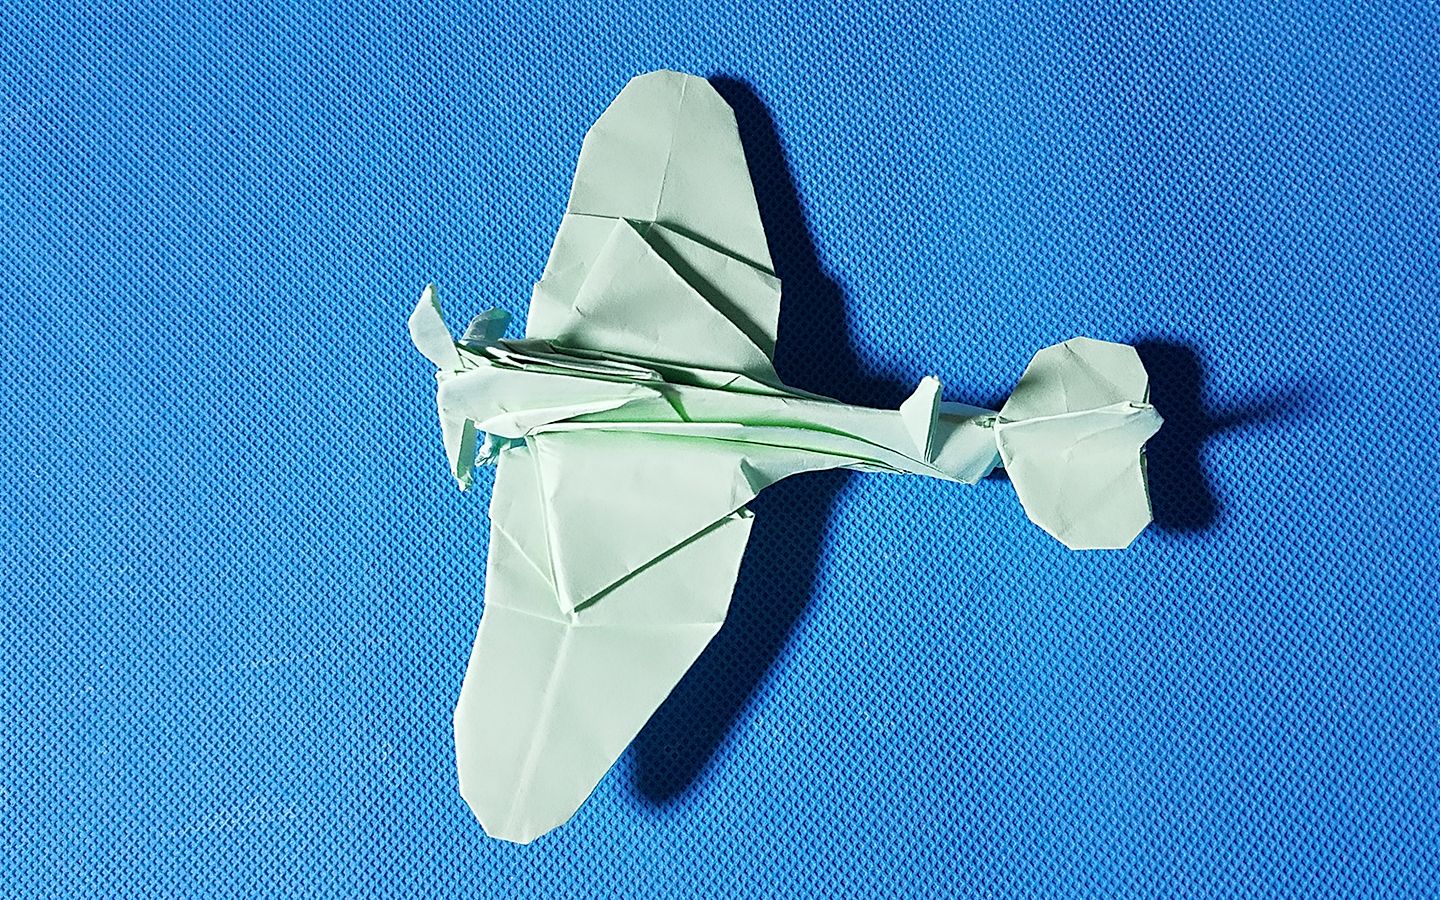 【折纸教程】折纸王子教你折纸炸弹导弹，讲解详细一学就会_哔哩哔哩 (゜-゜)つロ 干杯~-bilibili